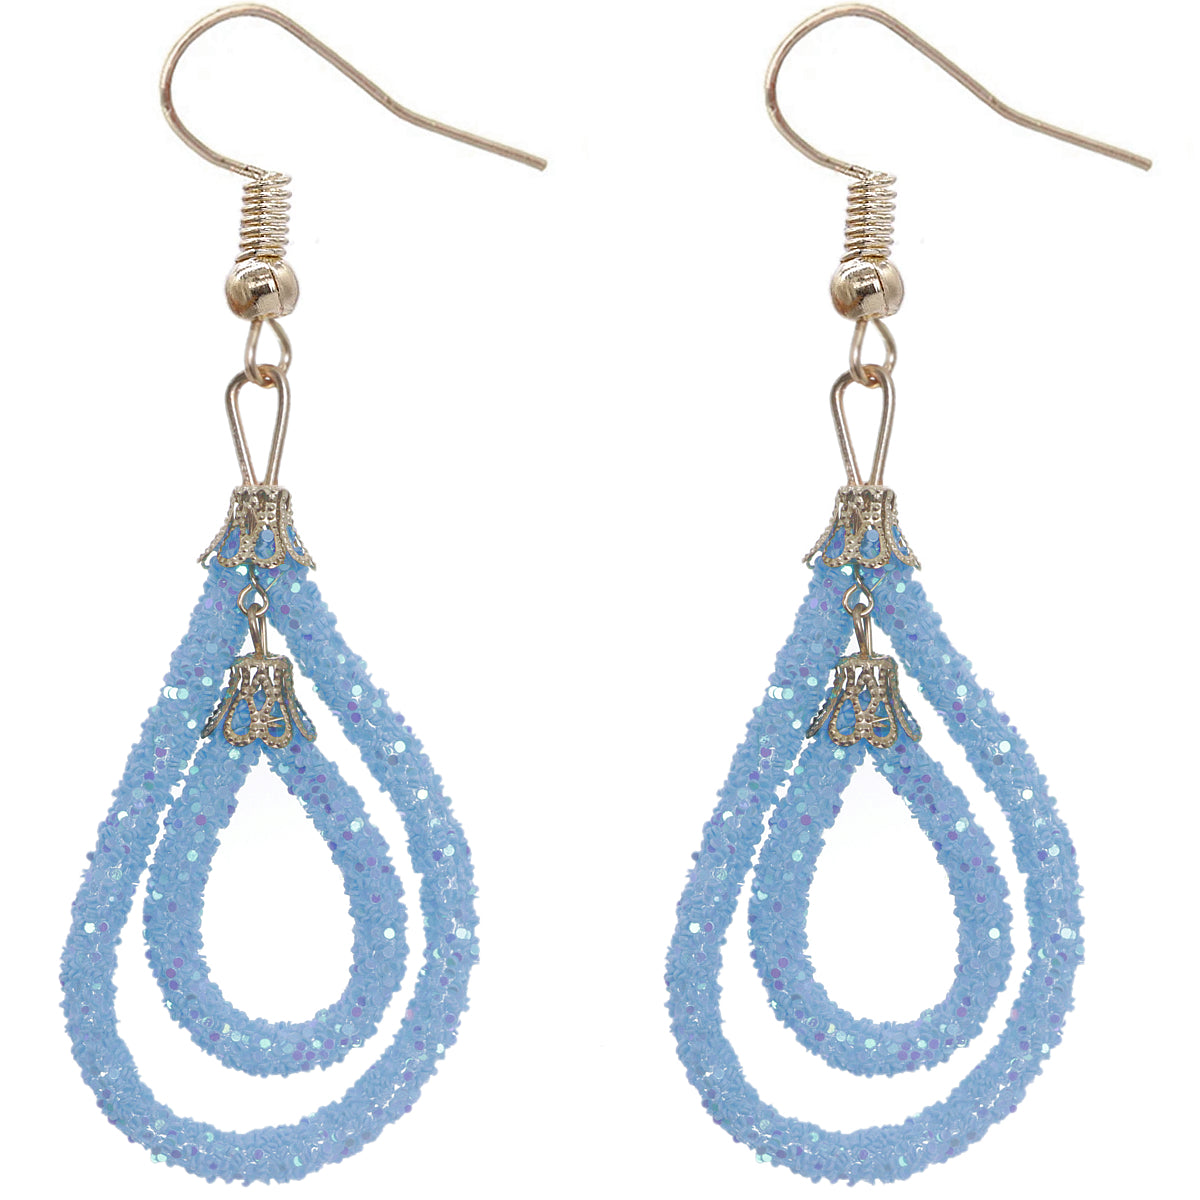 Light Blue Sequin Confetti Double Teardrop Hoop Earrings